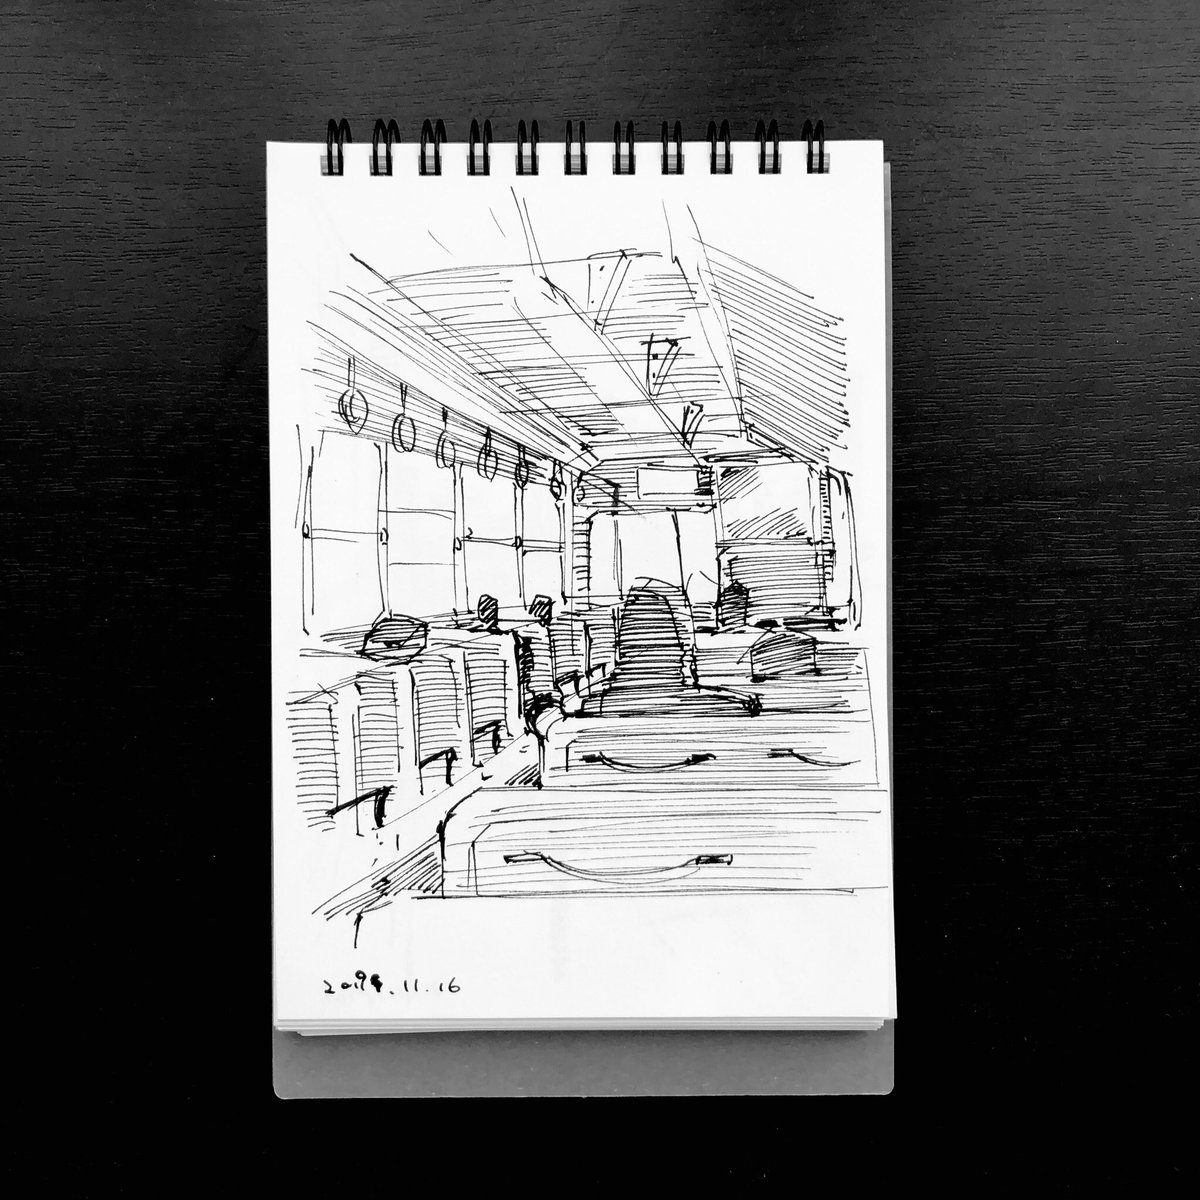 先週、法事のために静岡の実家へ帰省する途中で、駅とかバスの中とかでしたスケッチ。描く時間は自分で作らないと。
#絵描きさんと繋がりたい 創拡
#イラスト #ラクガキ #スケッチ 